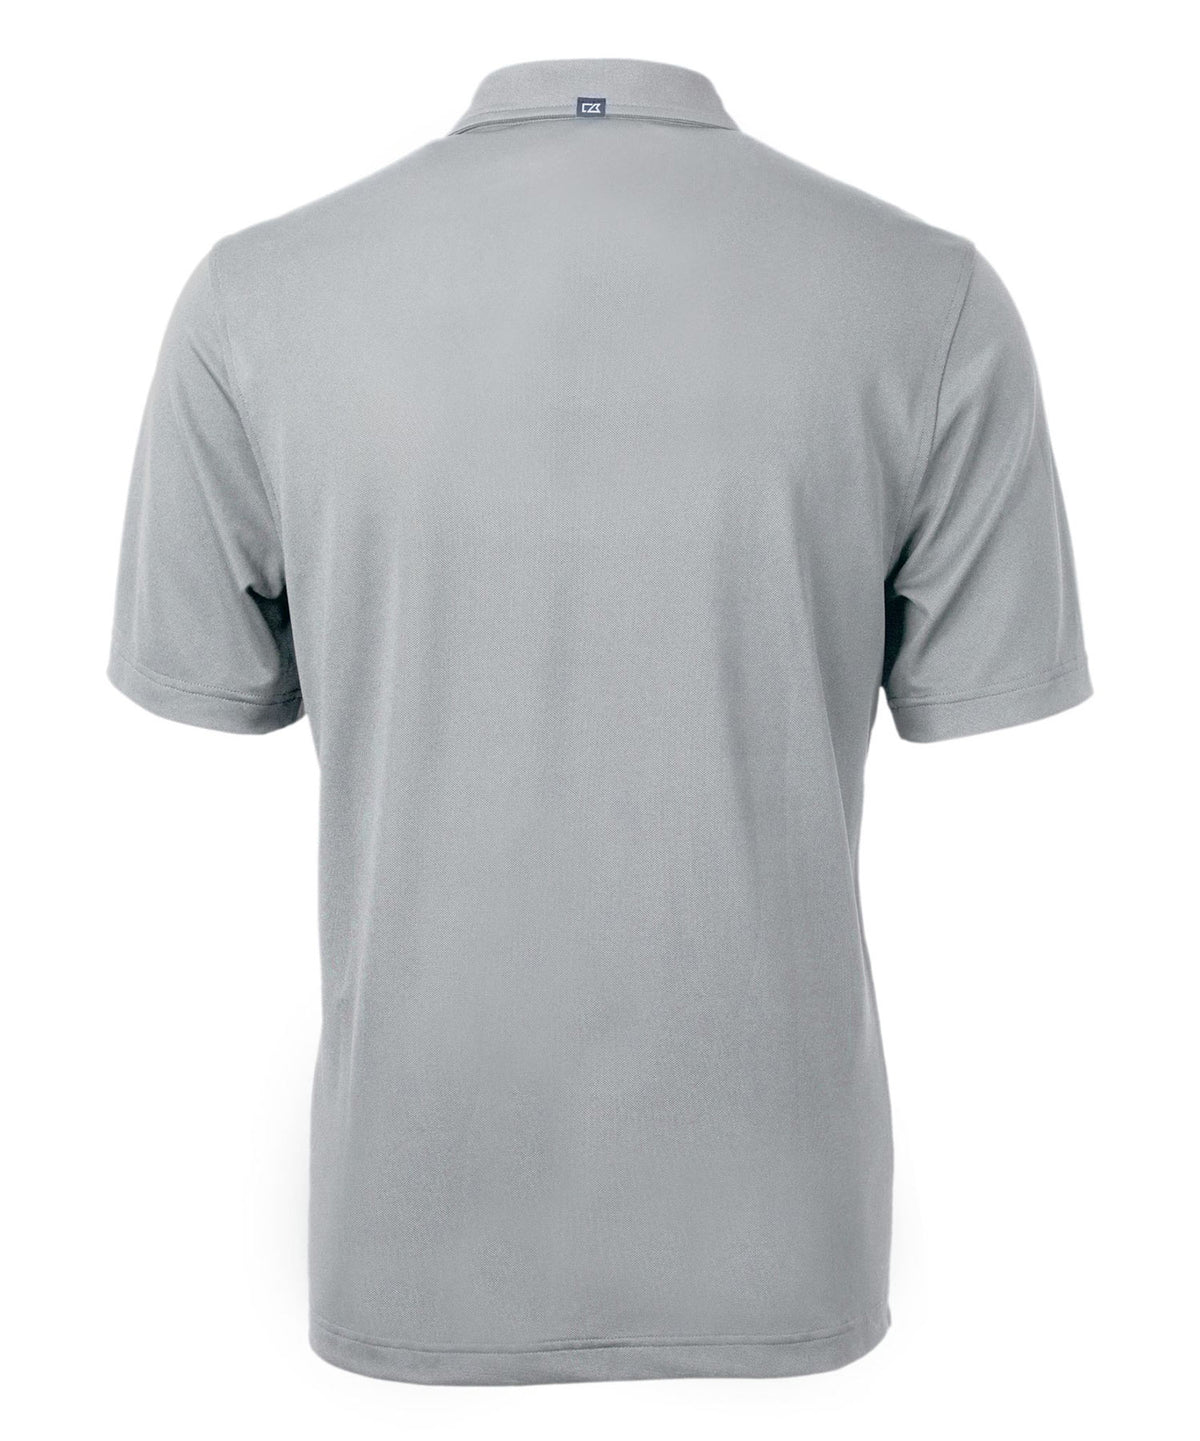 Cutter & Buck University of Maryland Terrapins Short Sleeve Polo Knit Shirt, Men's Big & Tall